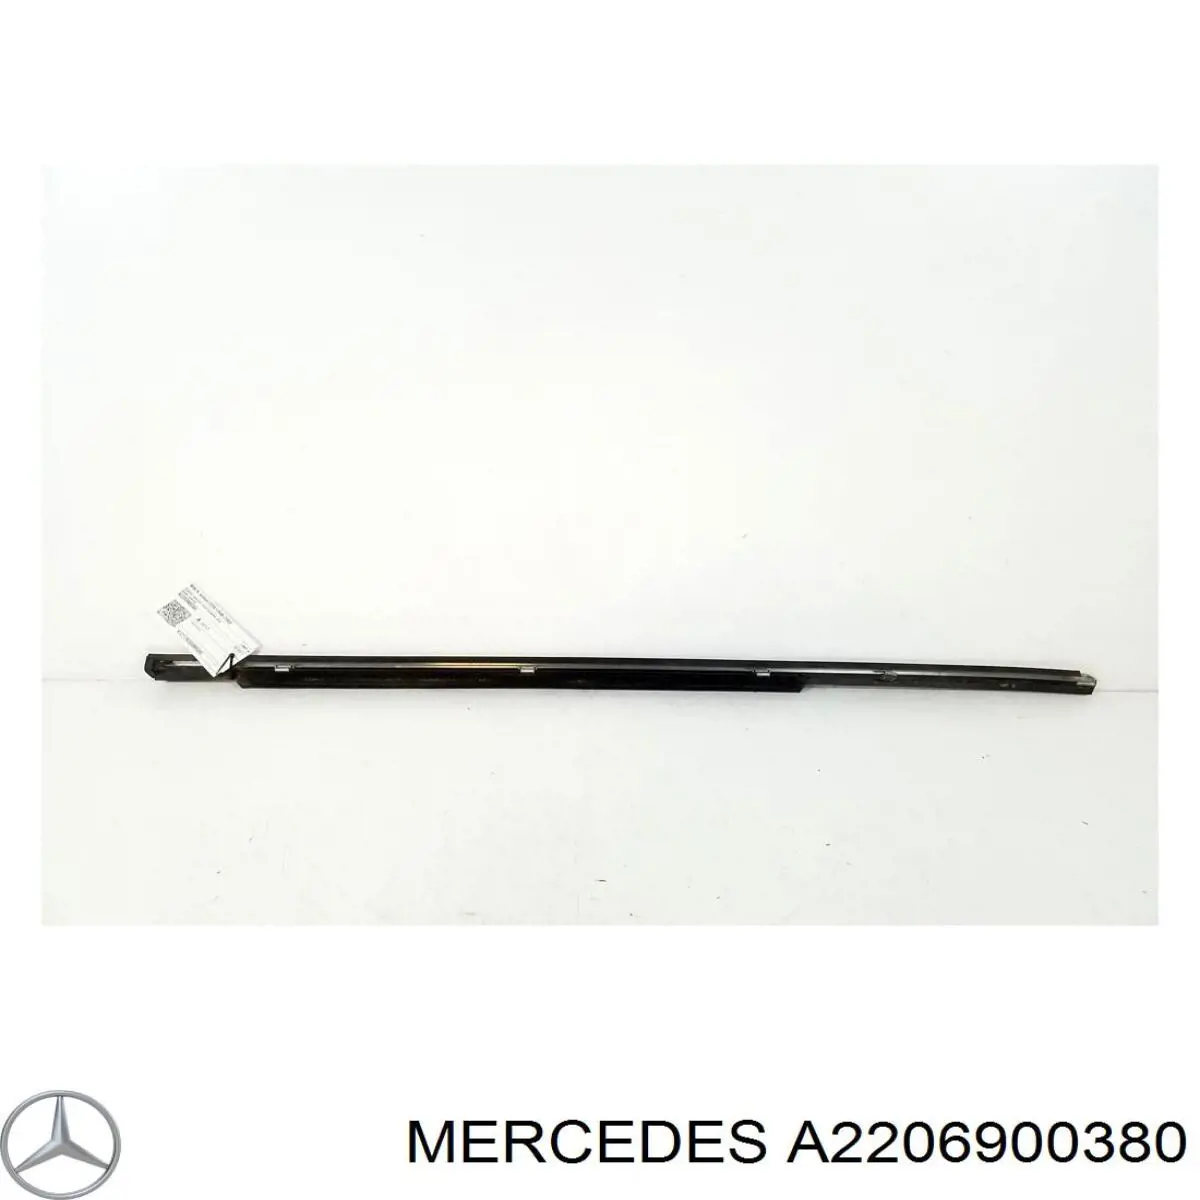 A2206900380 Mercedes уплотнитель стекла двери задней левой внешний (планка)